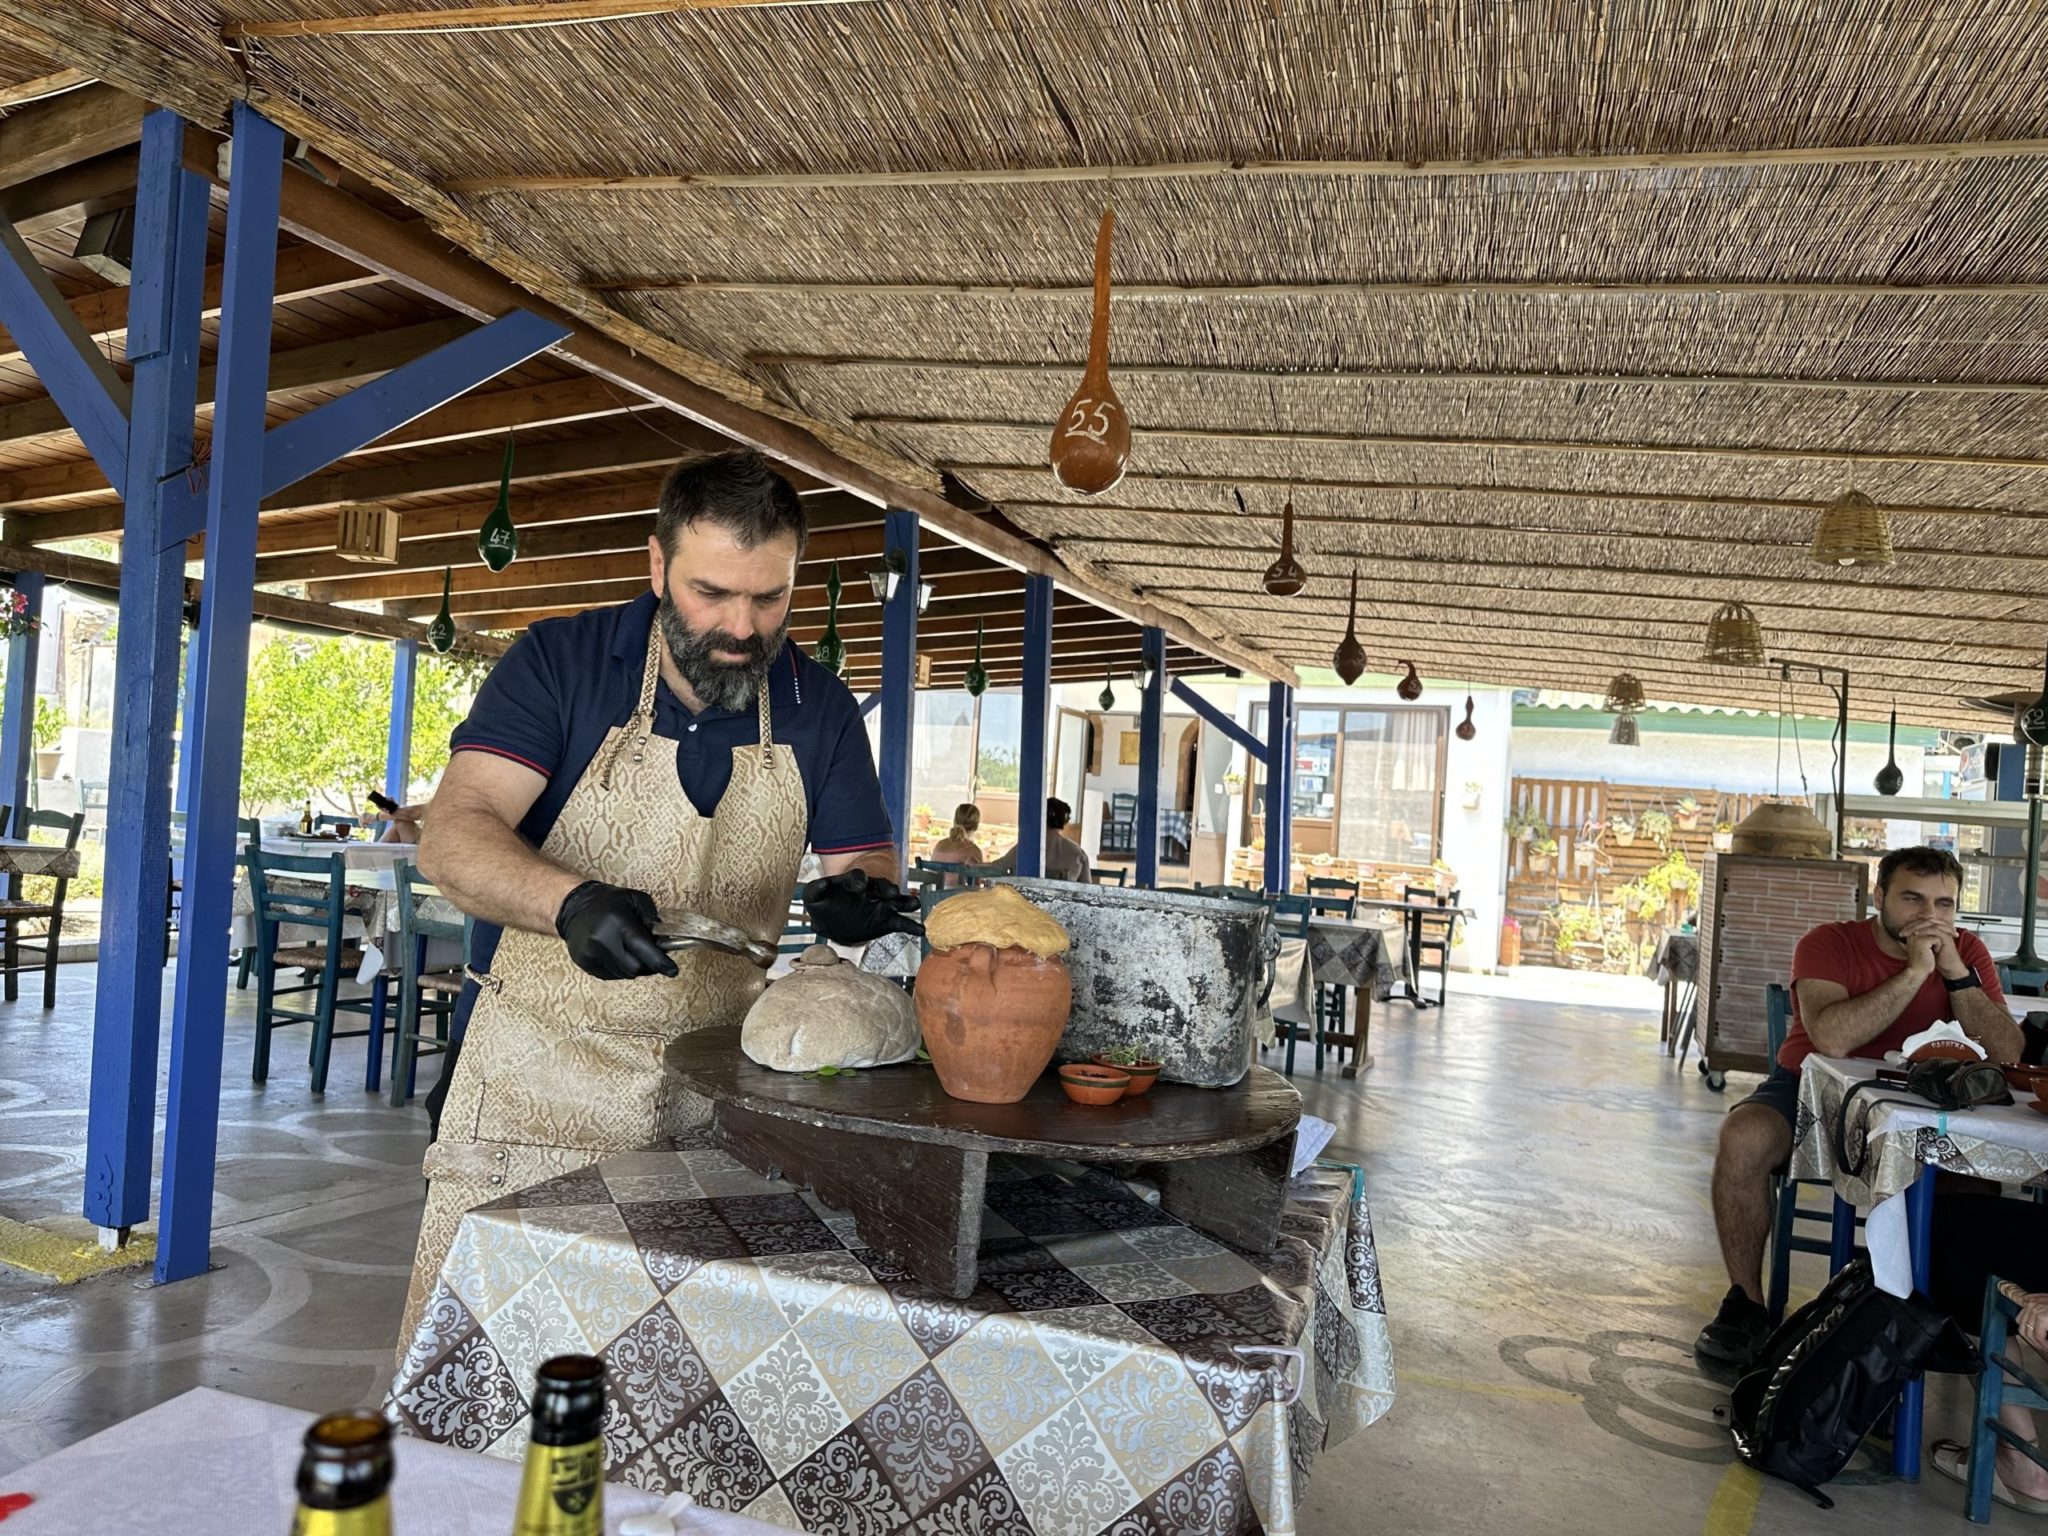 Το Μαγειροτεχνείο “Παράγκα” της Ρόδου κάνει το νησί περήφανο για την φιλοξενία και το πεντανόστιμο φαγητό του